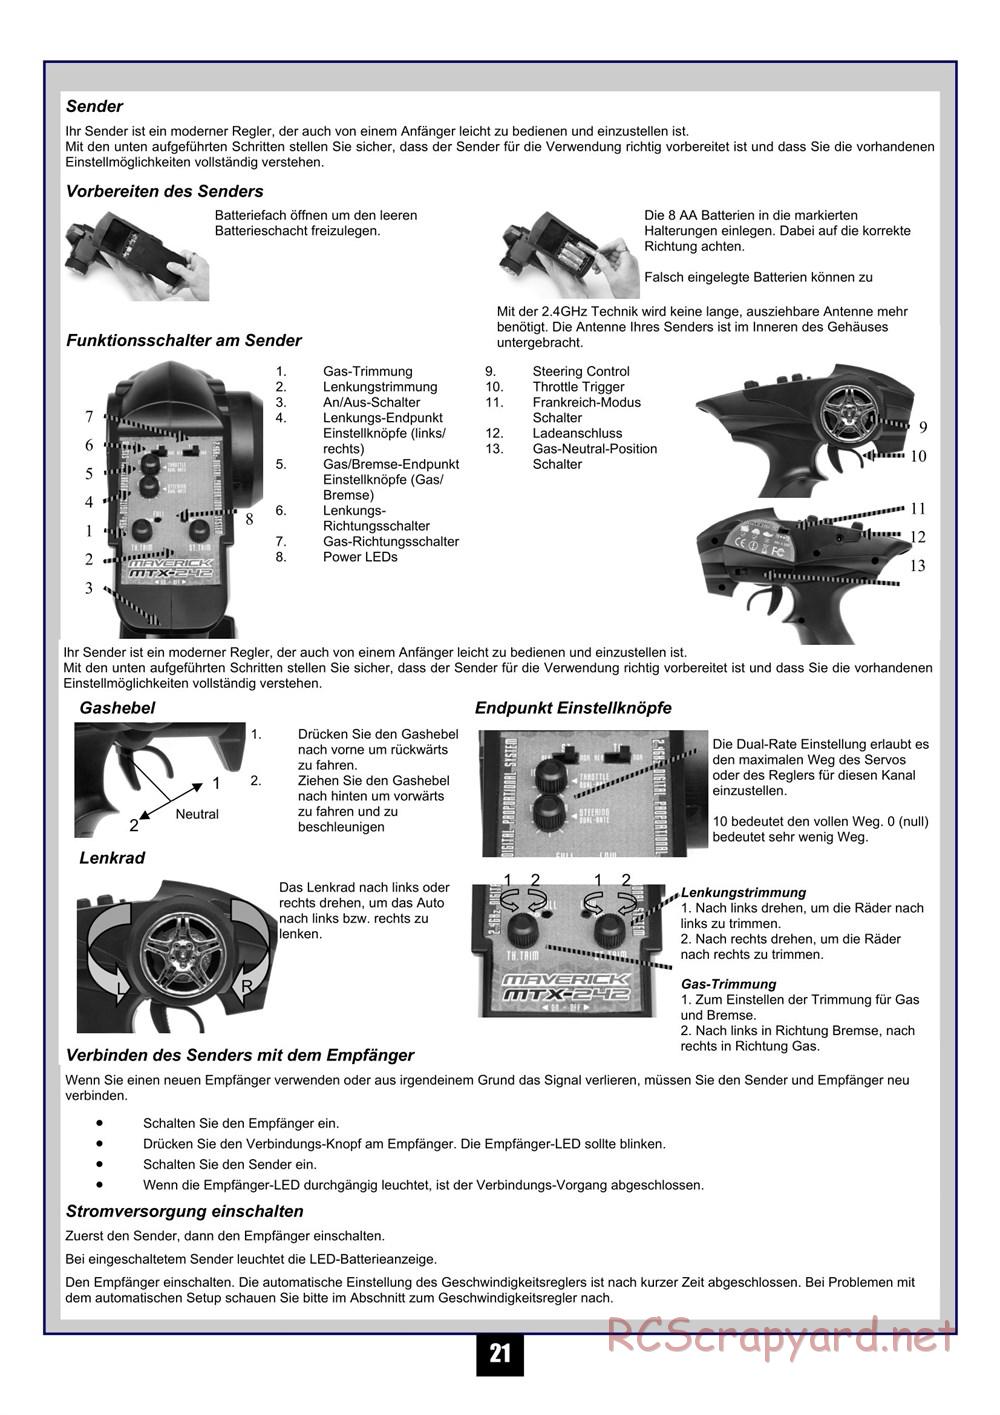 HPI - Maverick Blackout XB - Manual - Page 22